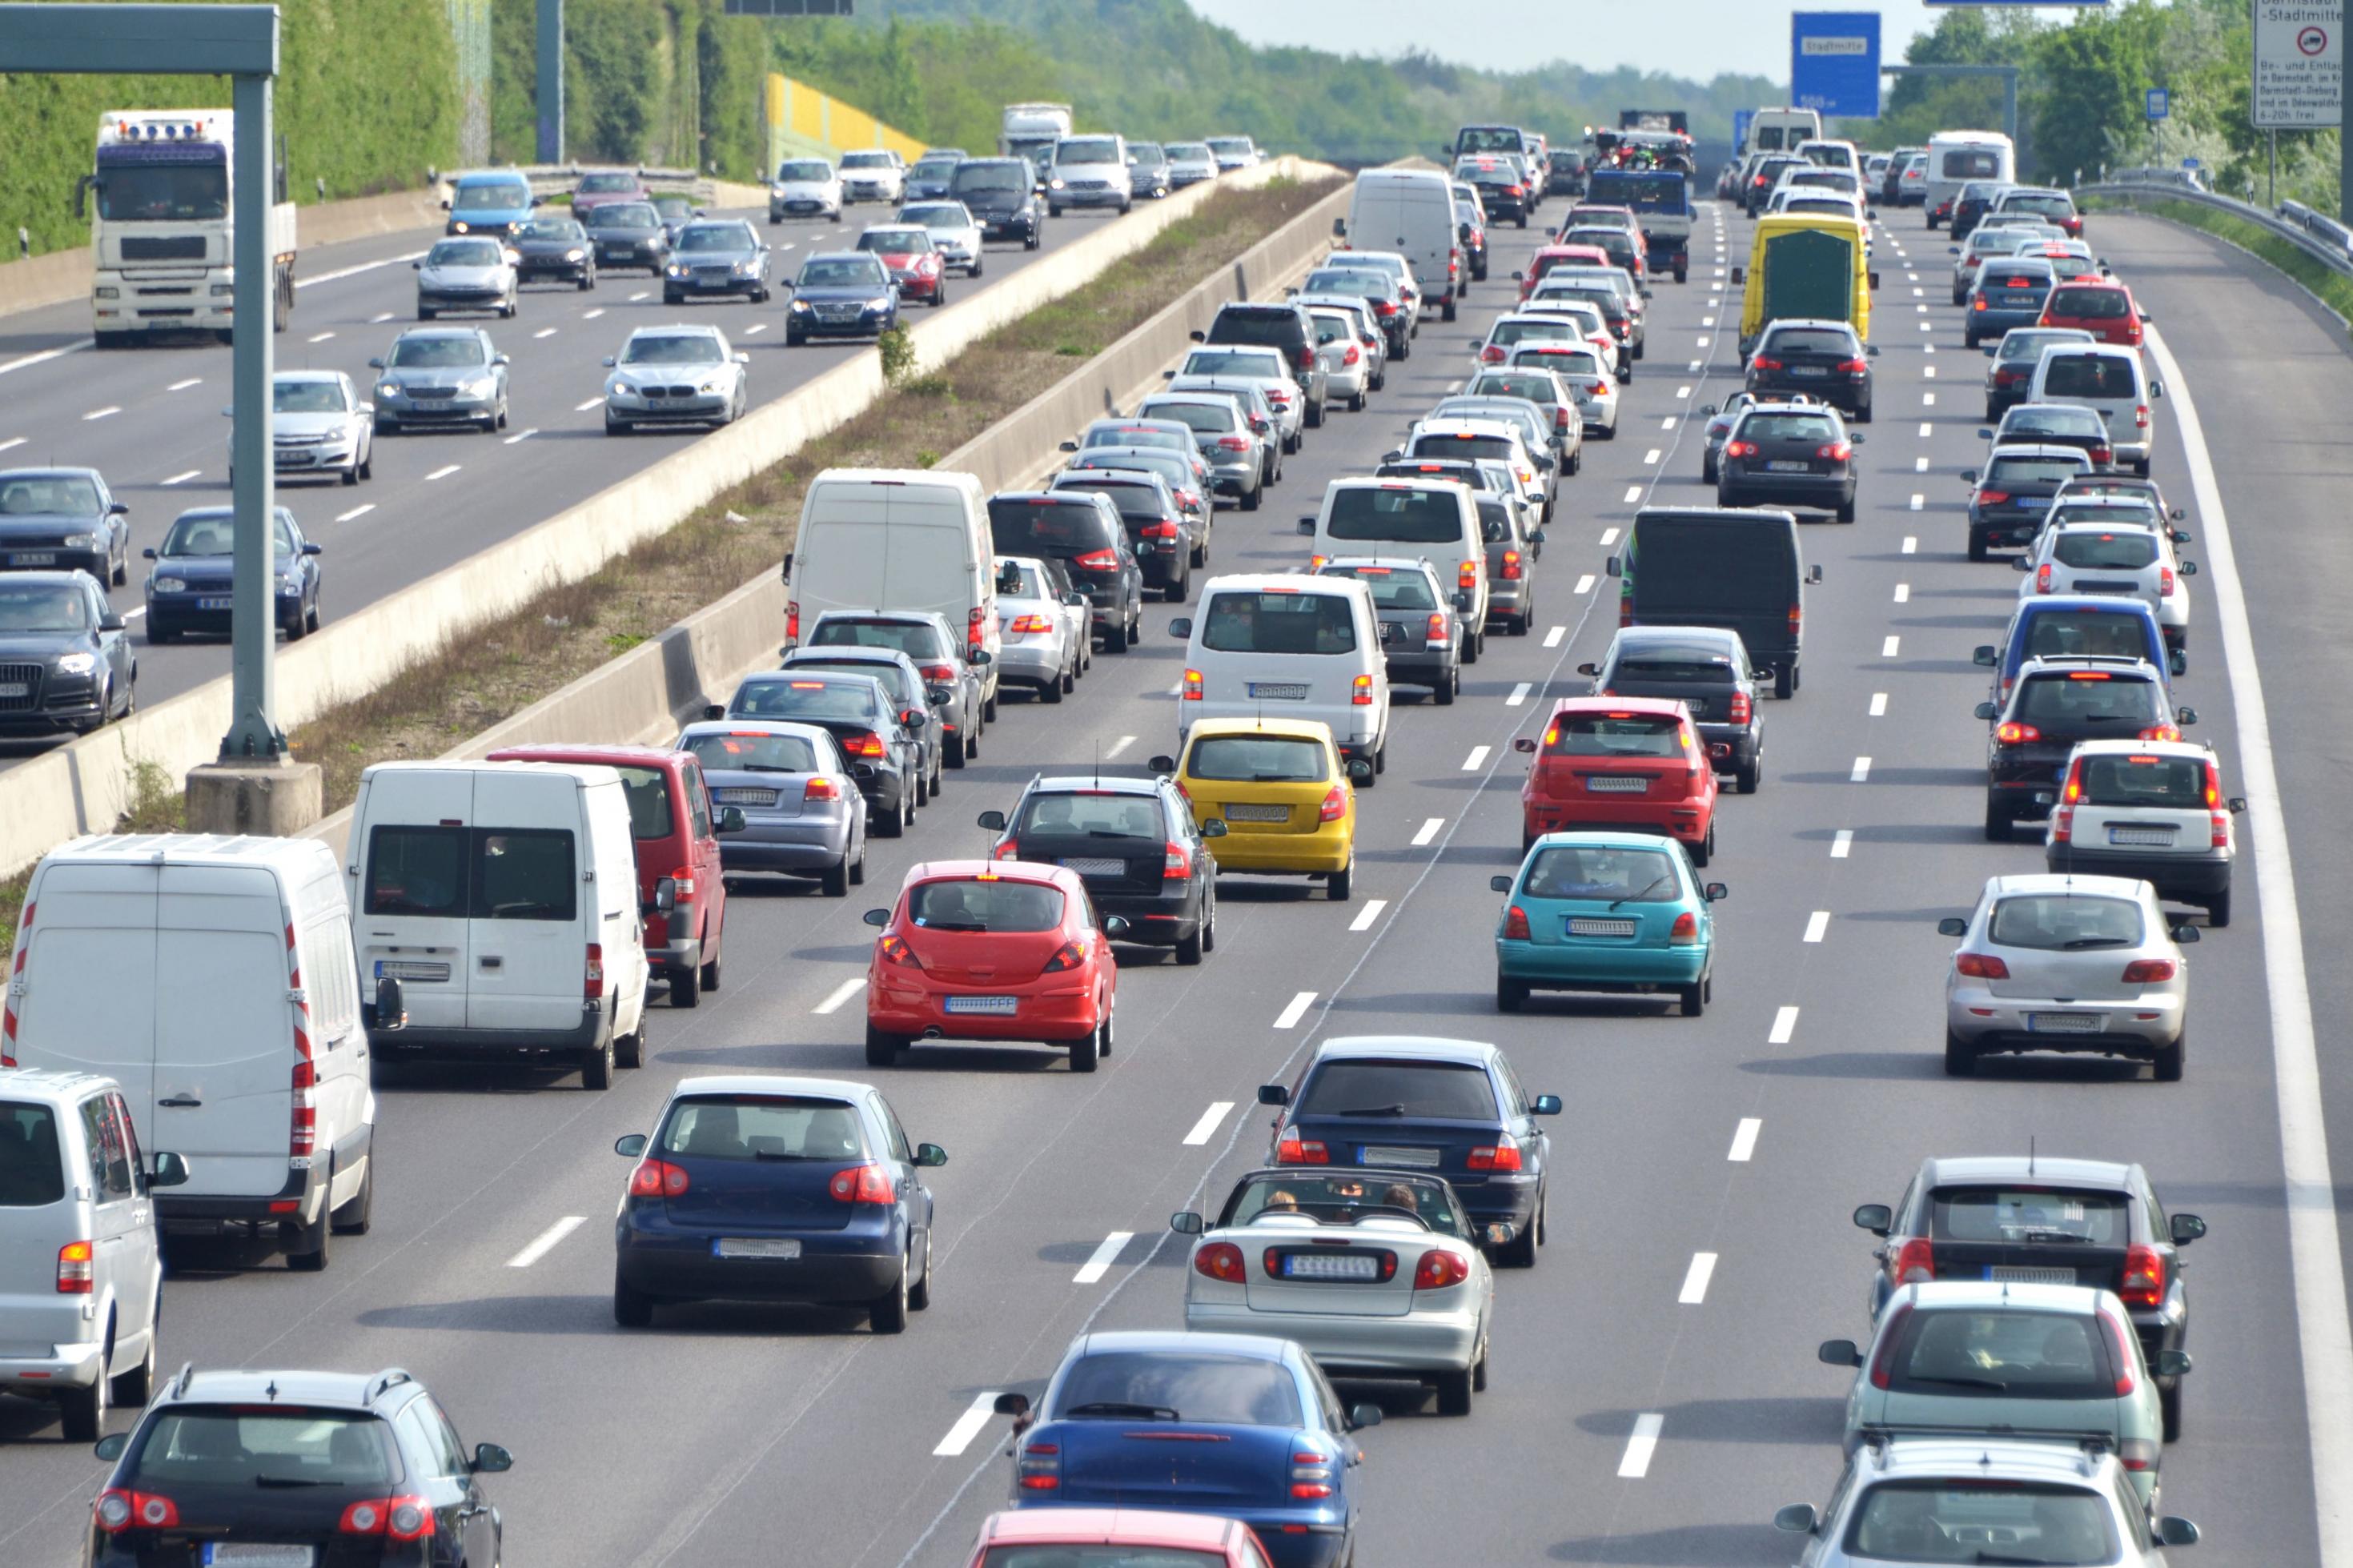 Verkehrsstau auf deutscher Autobahn